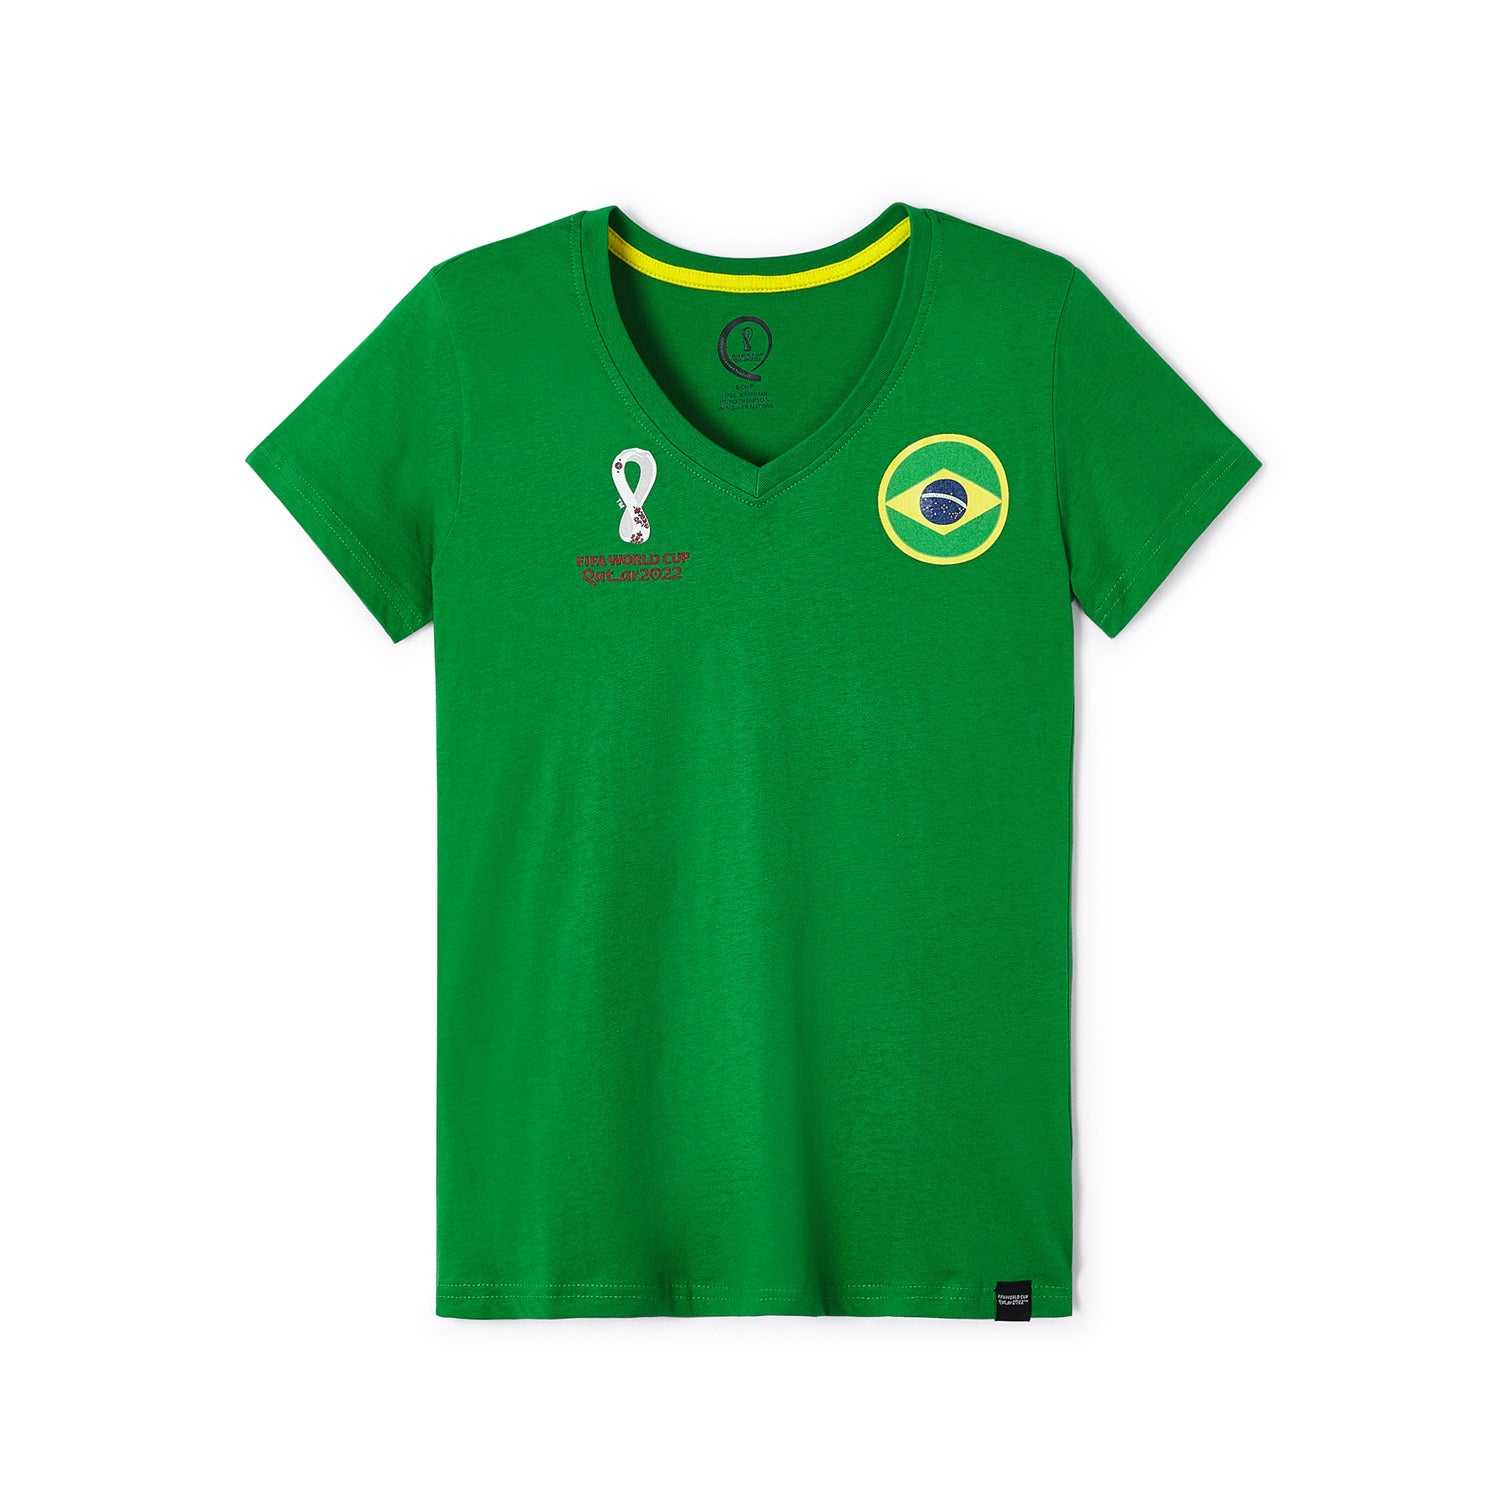 2022 World Cup Brazil Green T-Shirt - Womens